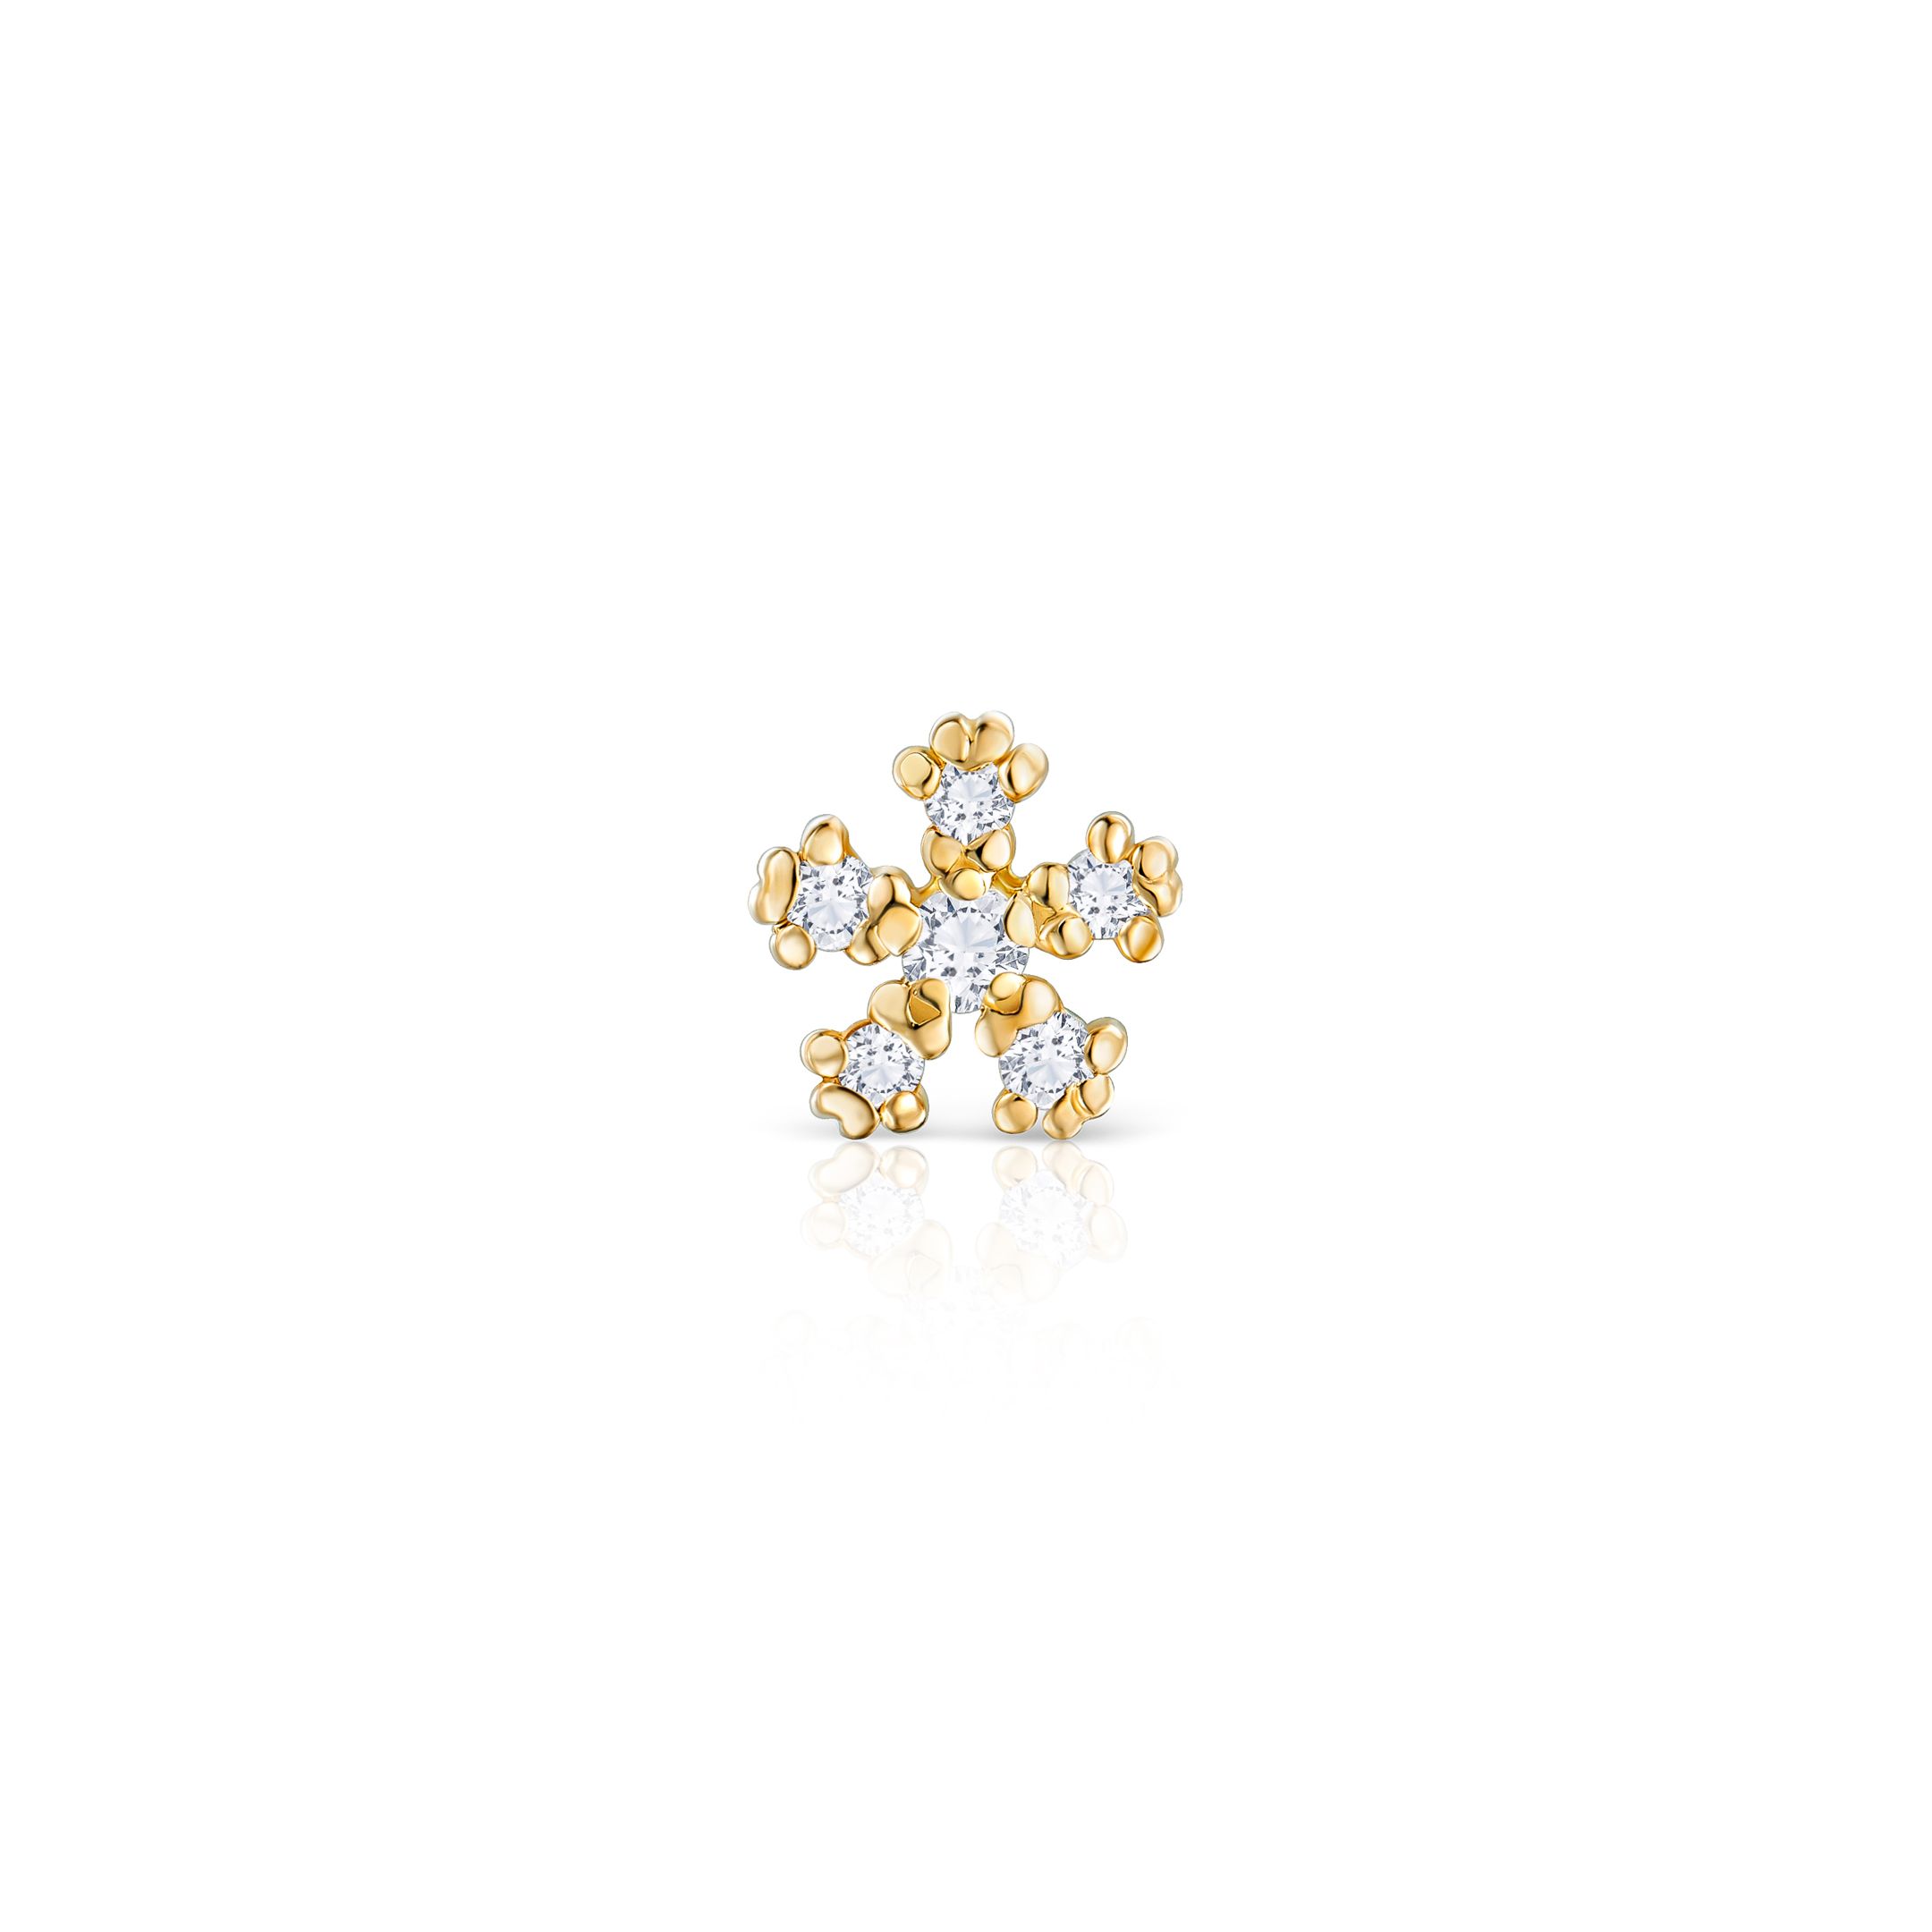 Pendiente Piercing Star Petals de Diamantes en Oro Amarillo de 18 Kt